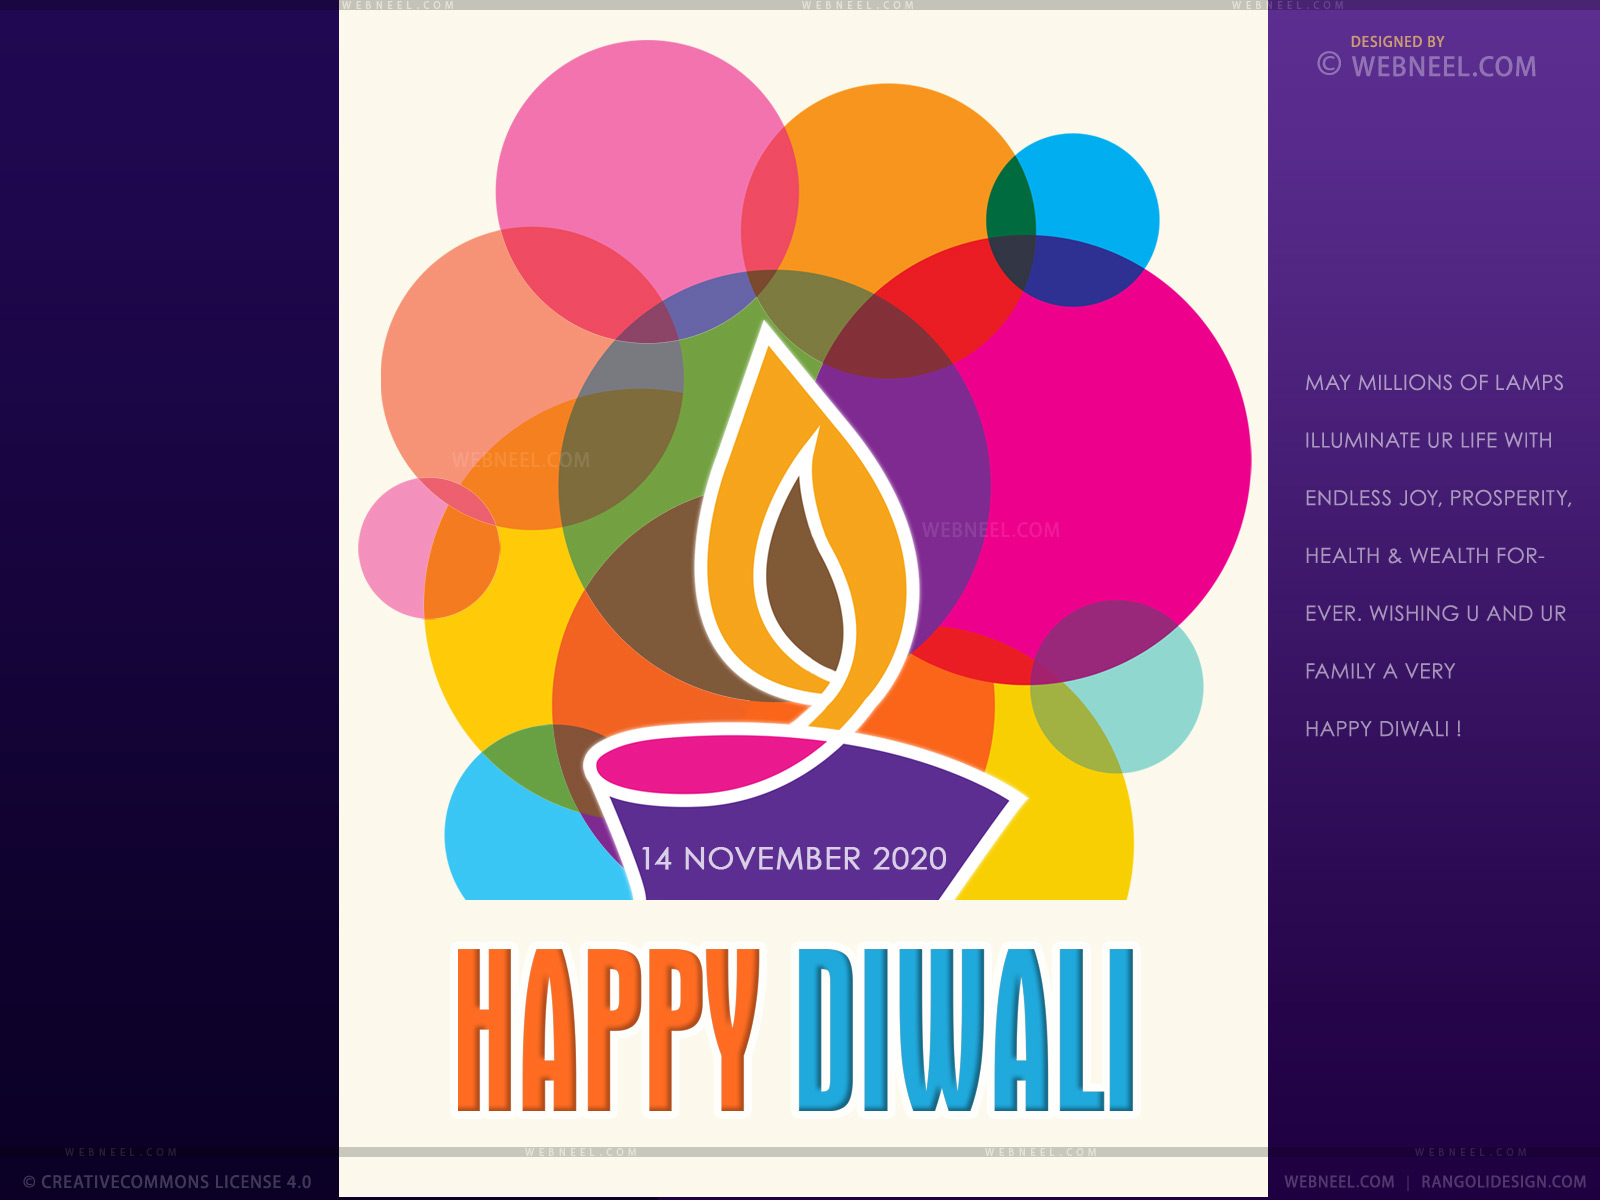 61906 Diwali Wallpaper Images Stock Photos  Vectors  Shutterstock